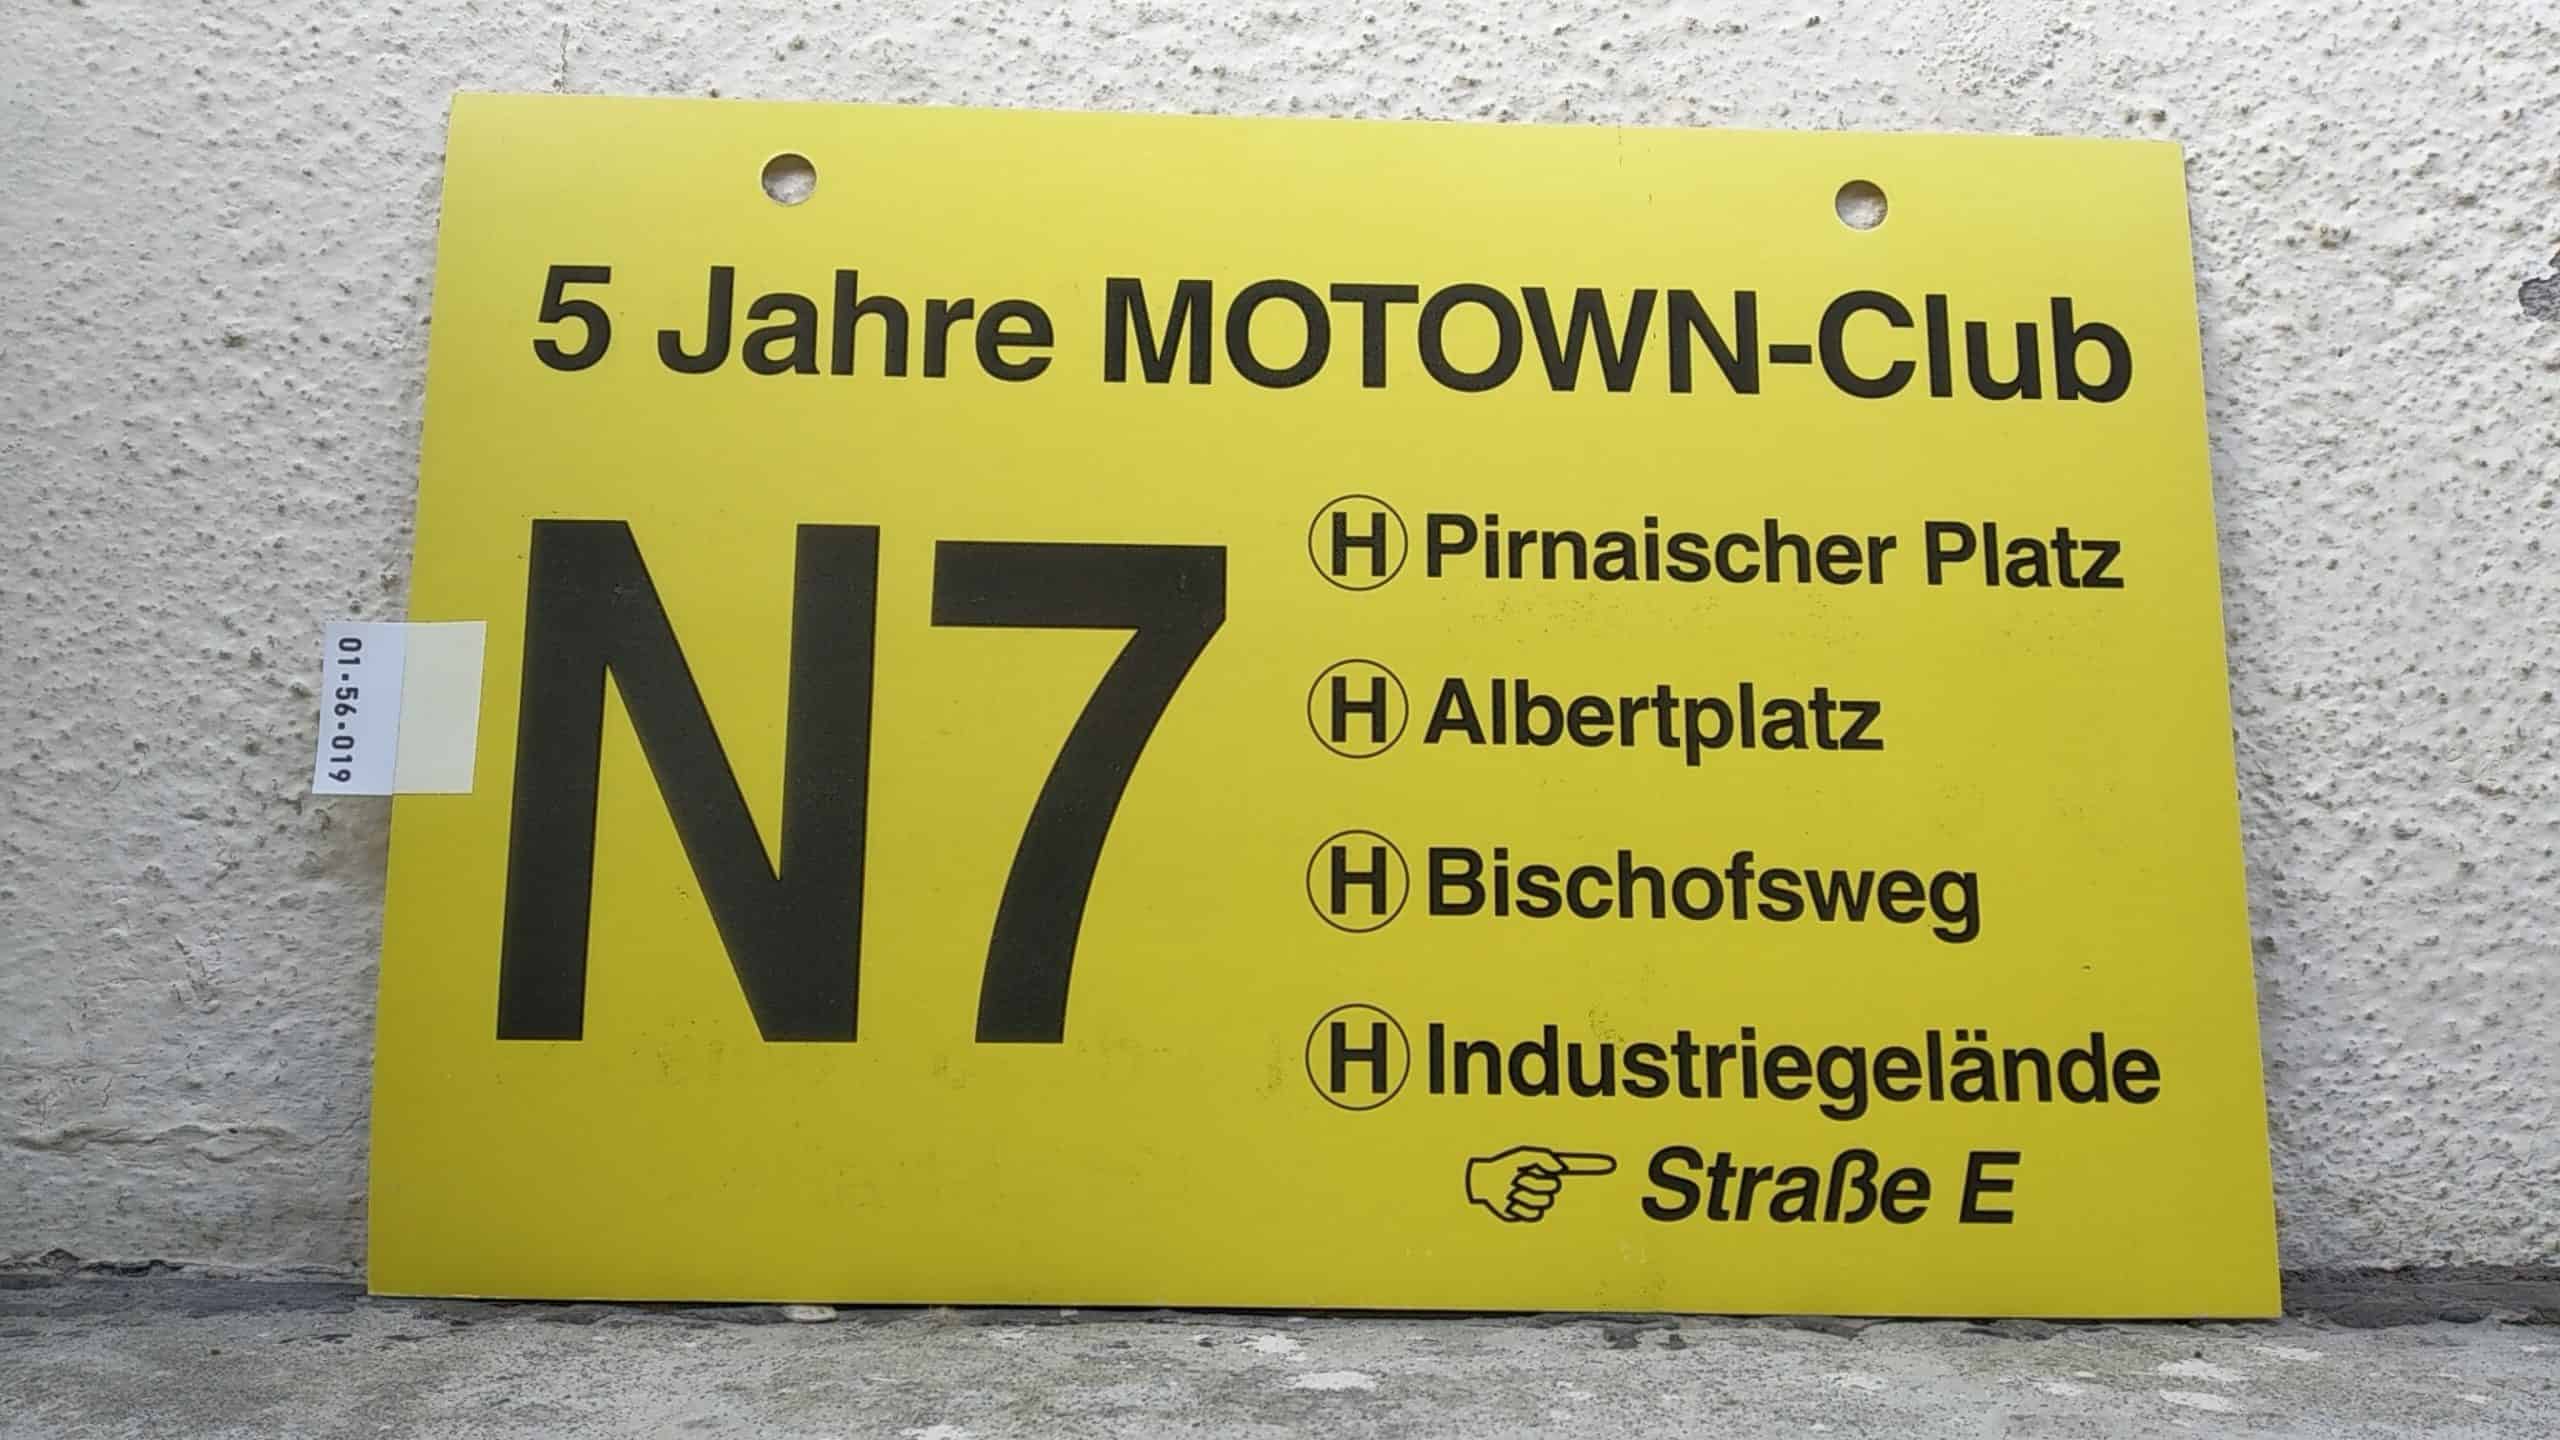 Ein seltenes Bus-Linienschild aus Dresden, anläßlich 5 Jahre MOTOWN-Club N7 [Pirnaischer Platz - Industriegelände [Zeigefinger] Straße E]